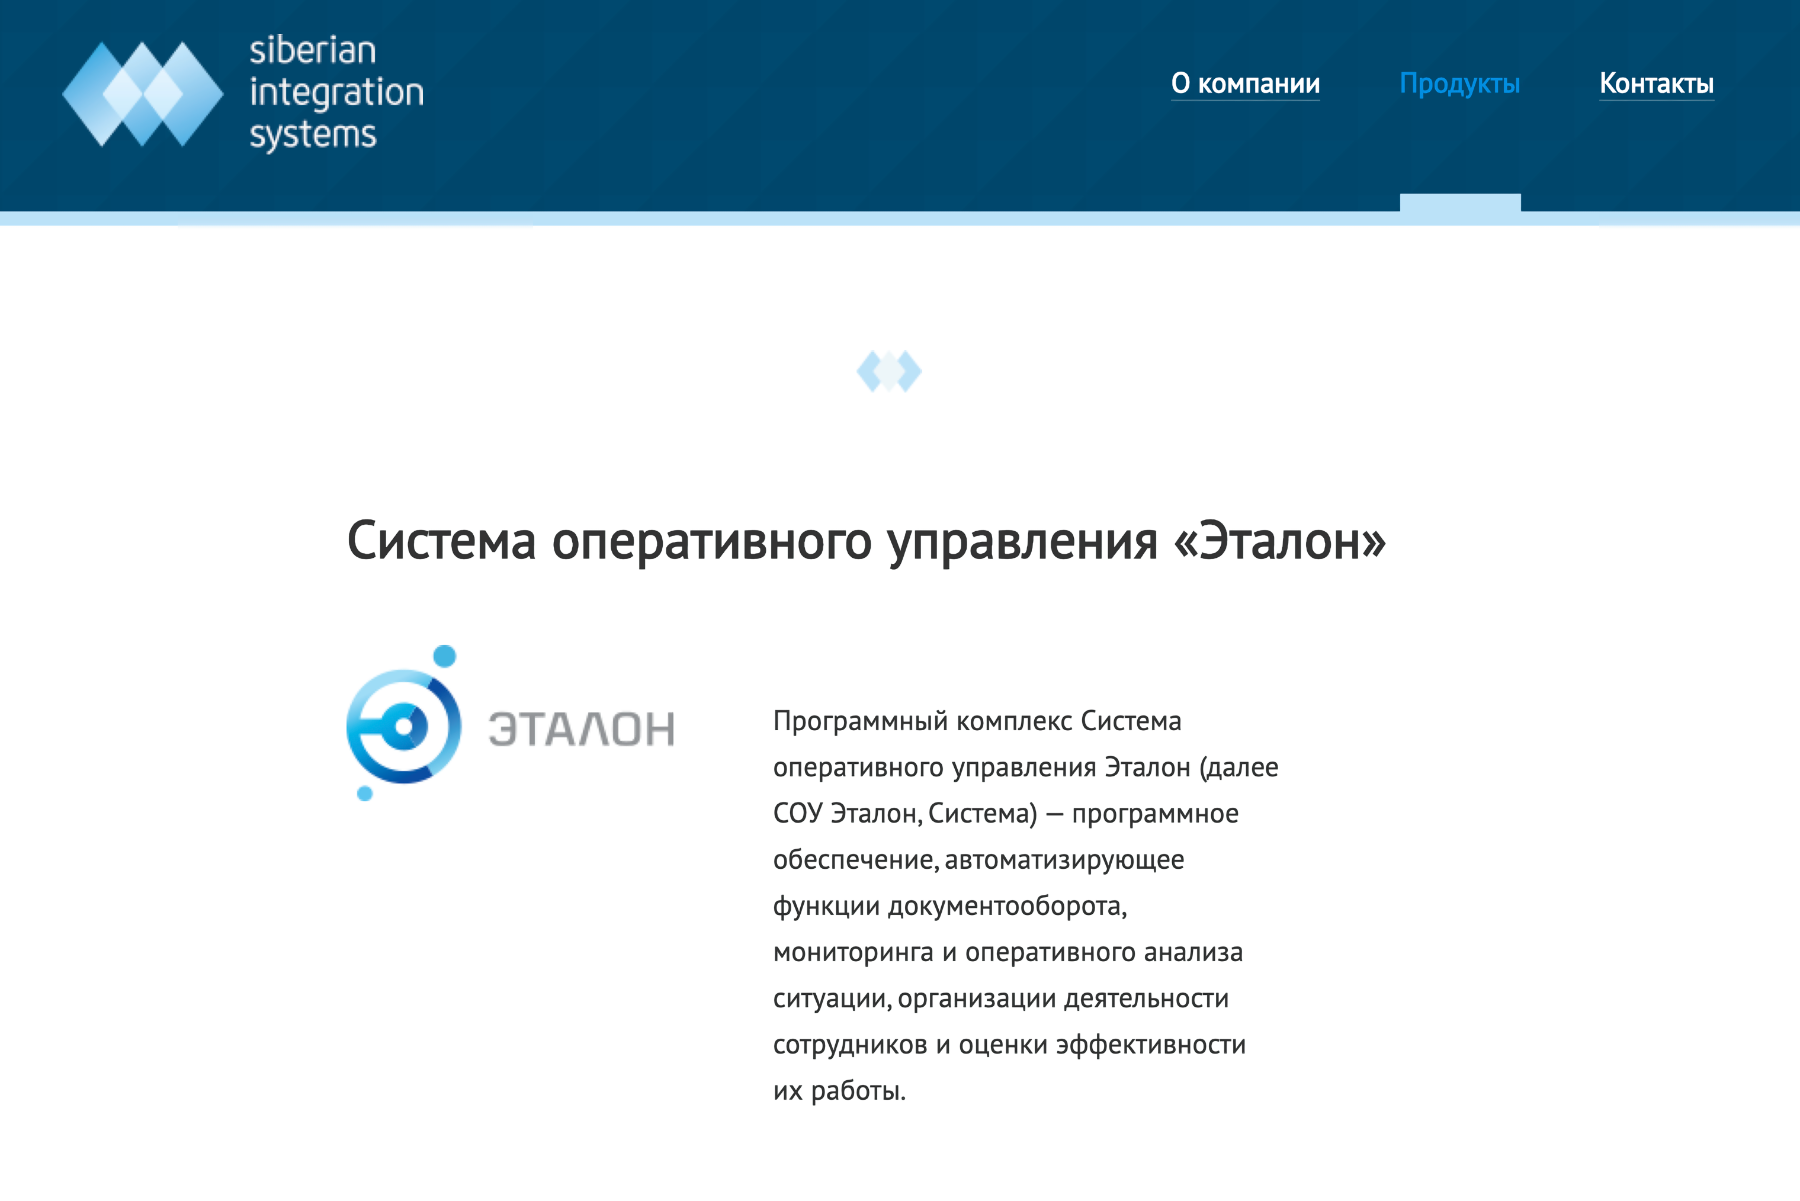 Судя по информации в интернете, система оперативного управления «Эталон» — продукт компании «Сибирские интеграционные системы»